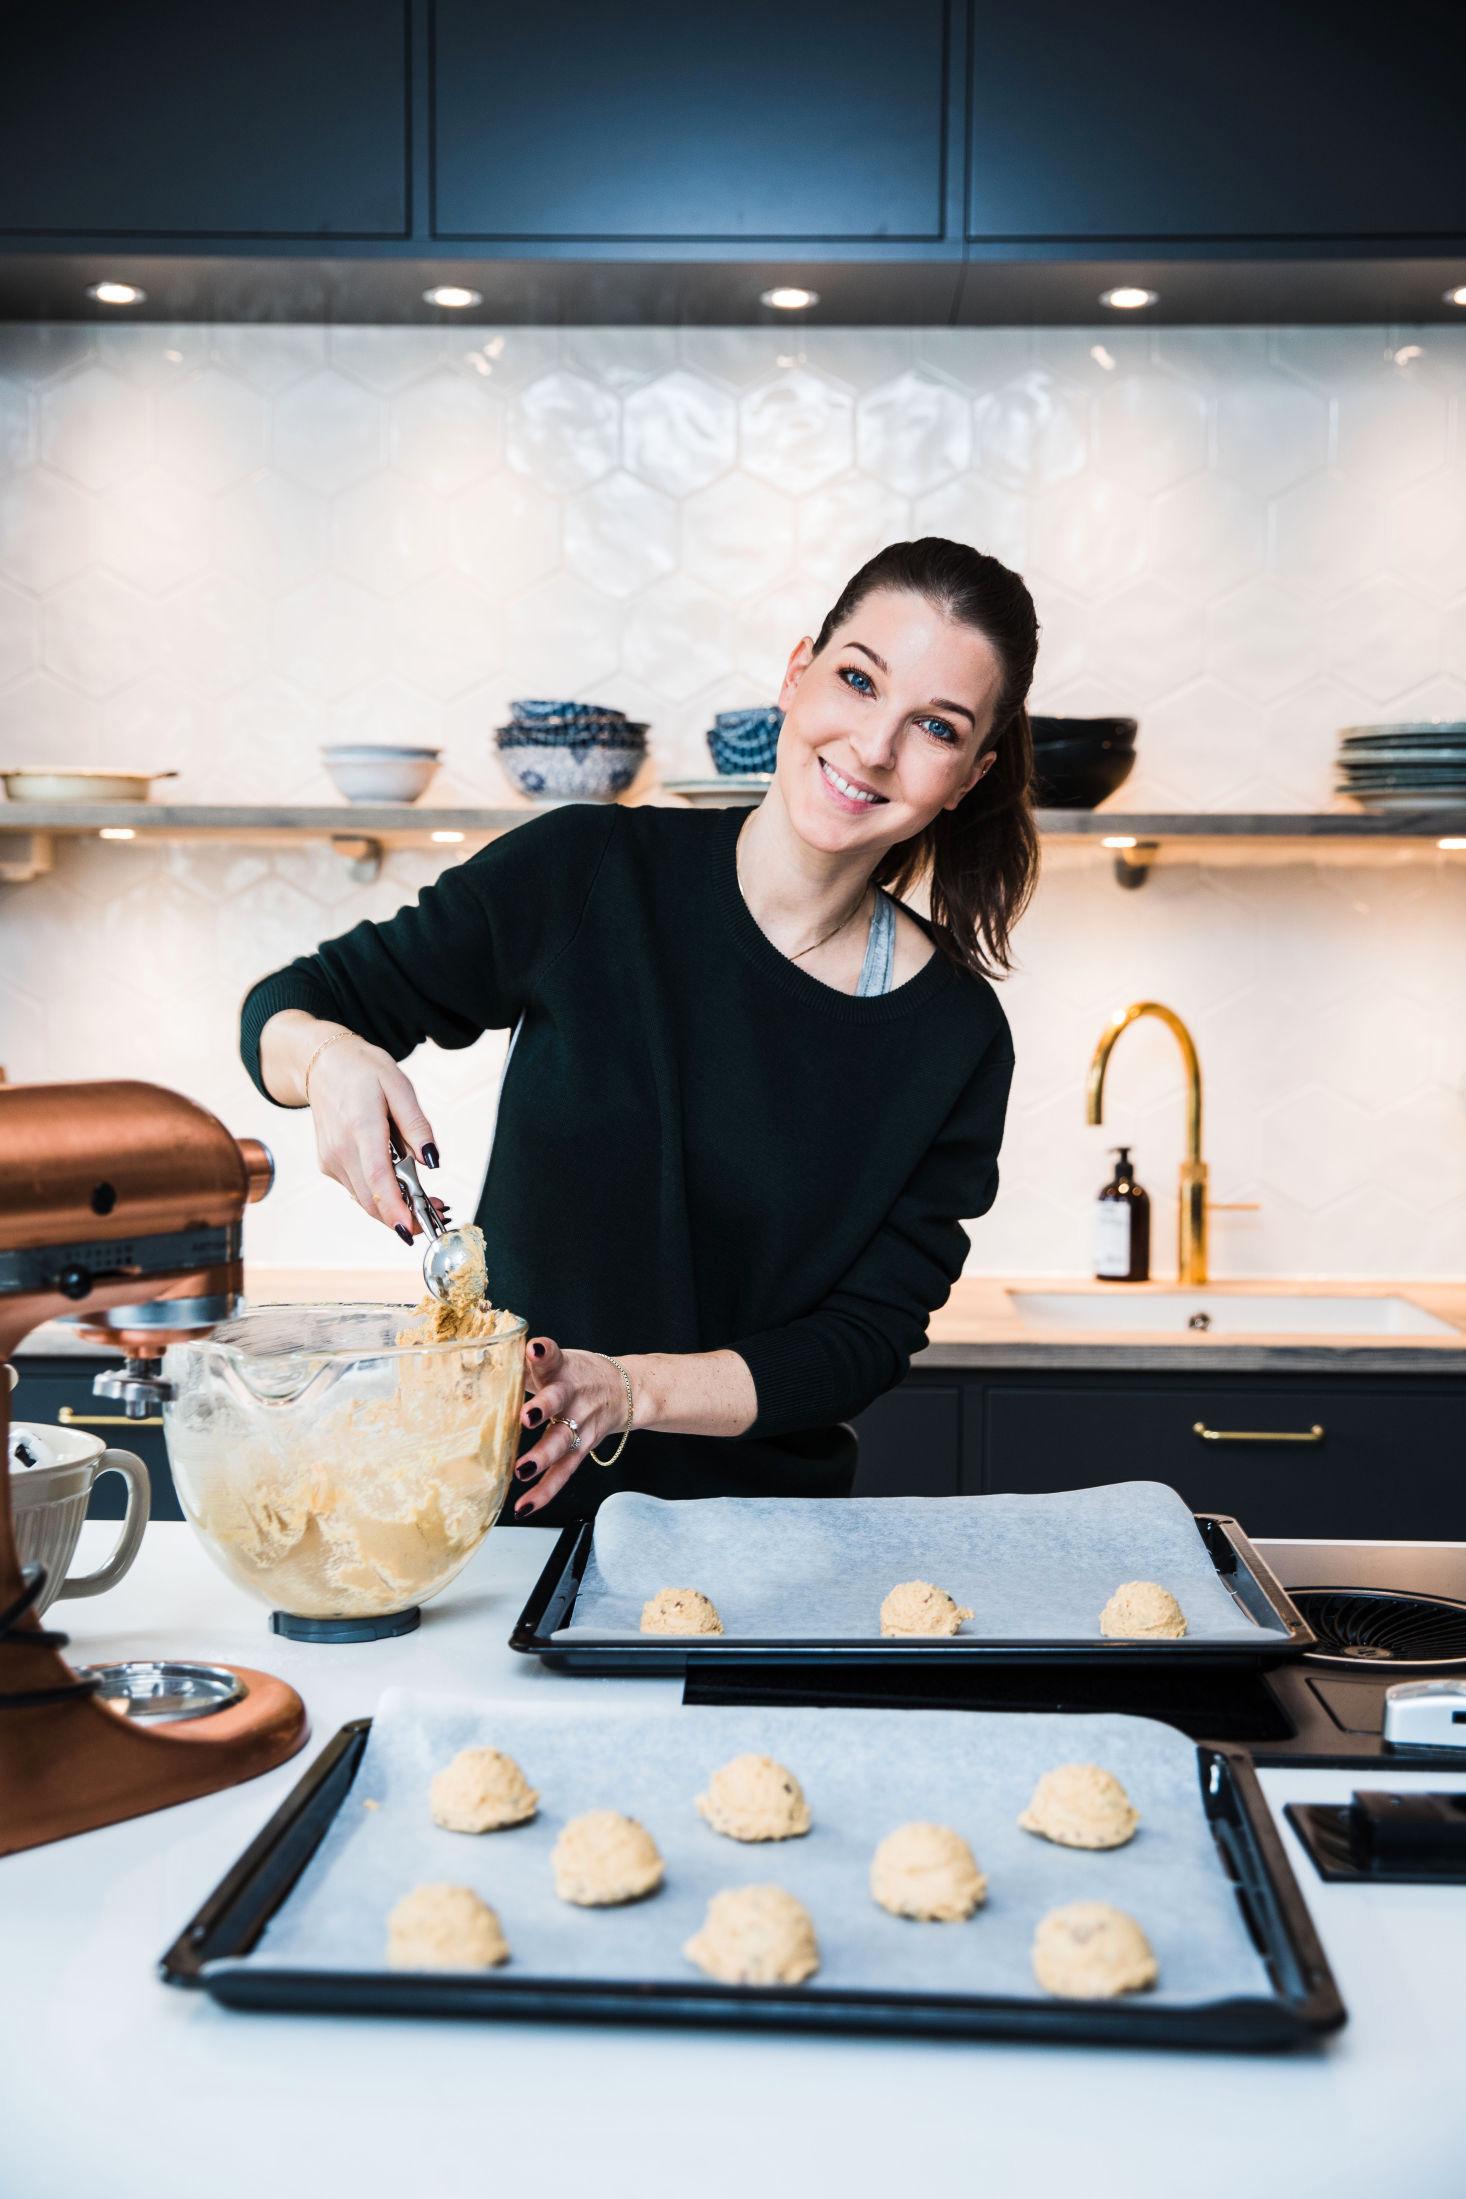 KREATIV: Et godt tips er å bruke iskremskje når du skal fordele cookiedeigen, ifølge kokebokforfatteren. Foto: Jørgen Braastad/VG